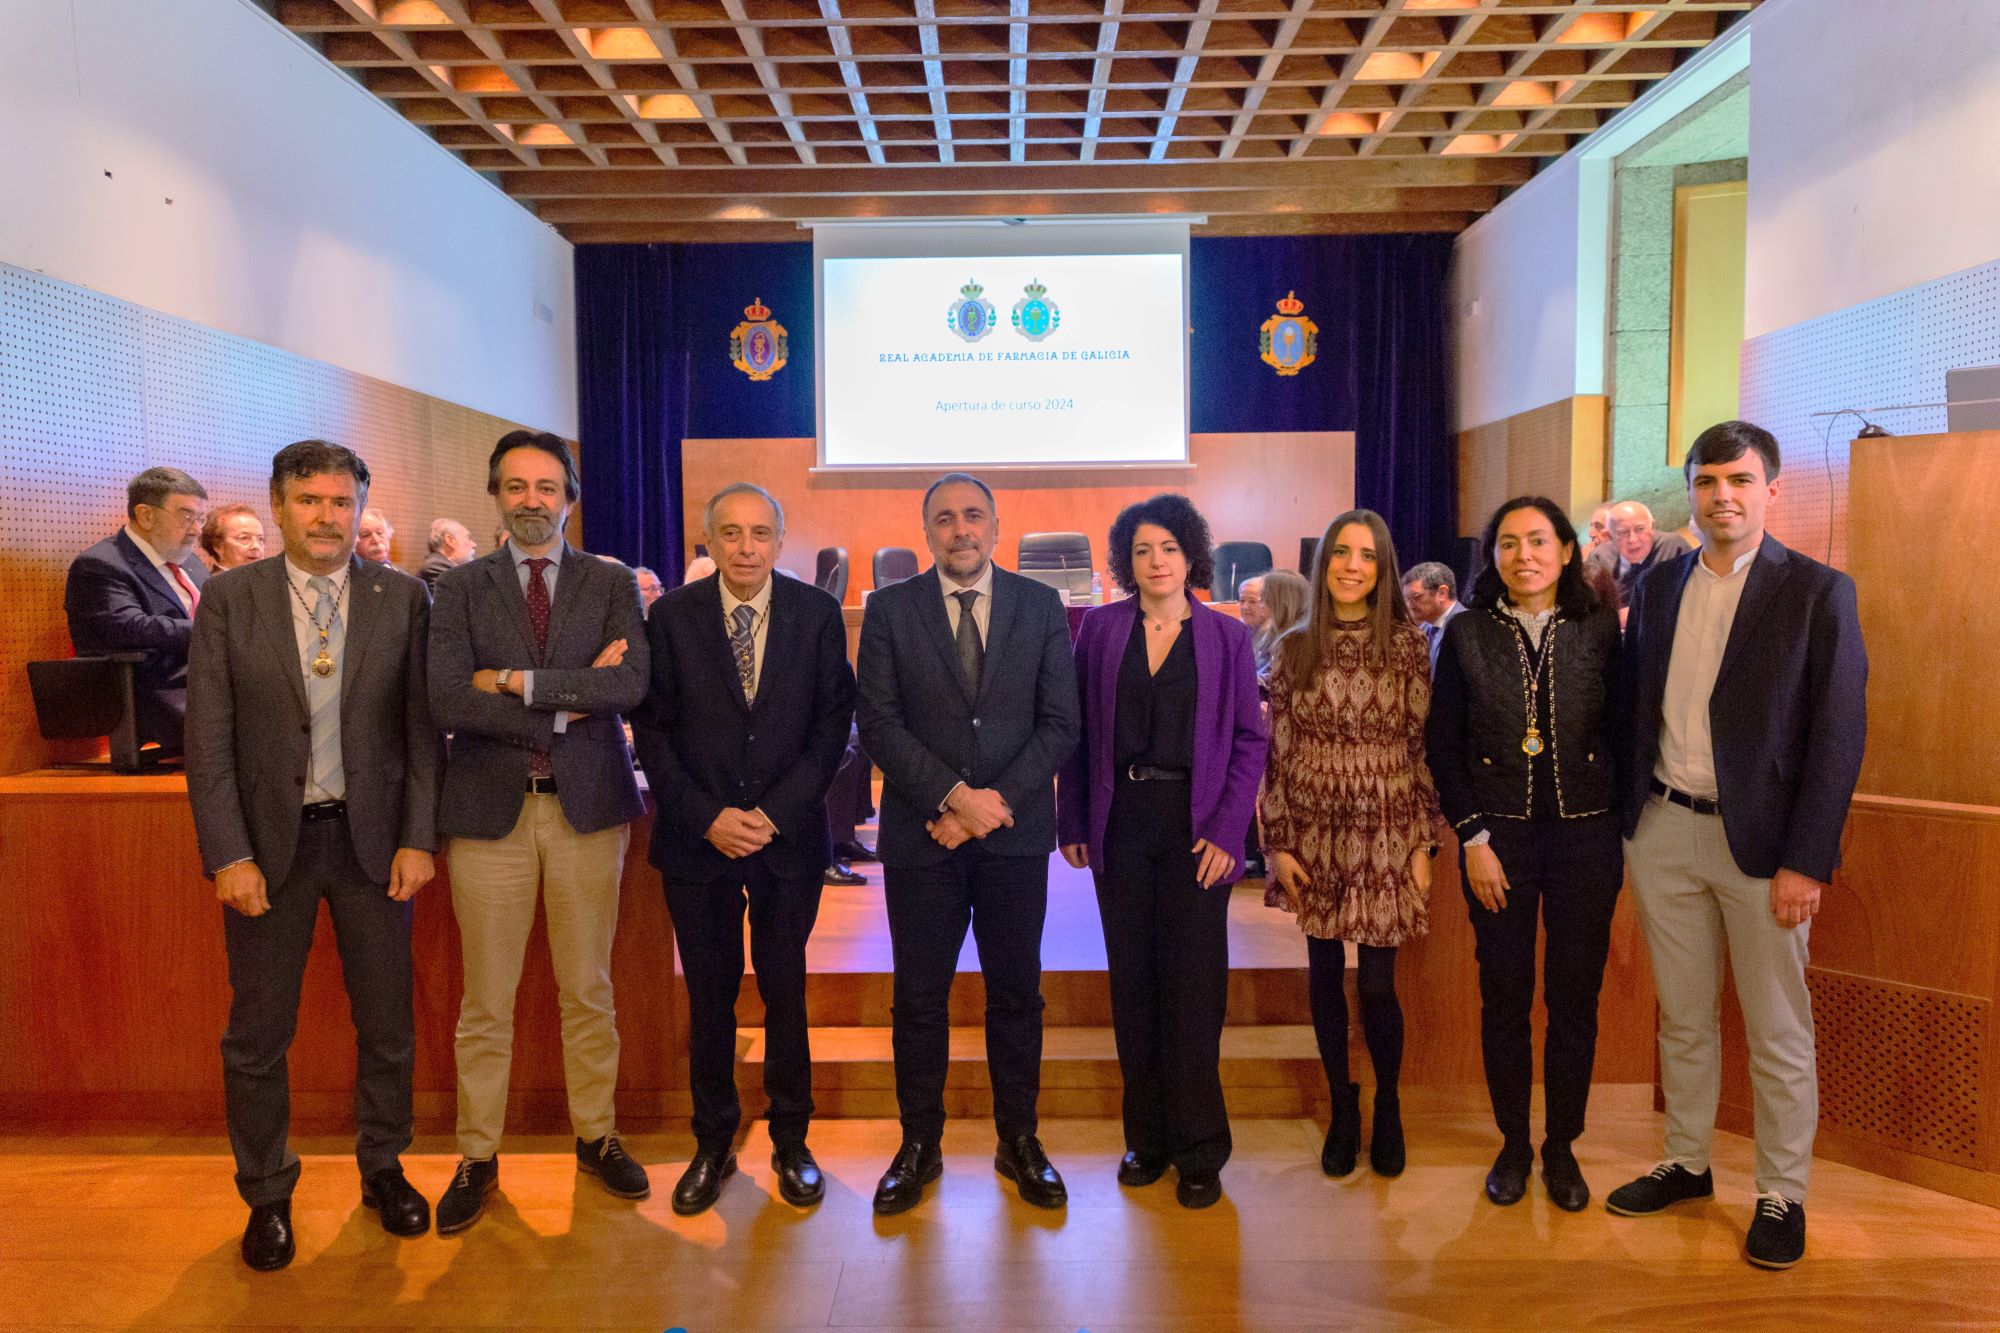 La Real Academia de Farmacia de Galicia reconoce el trabajo de Farmamundi con el IV Premio Perfecto Feijóo